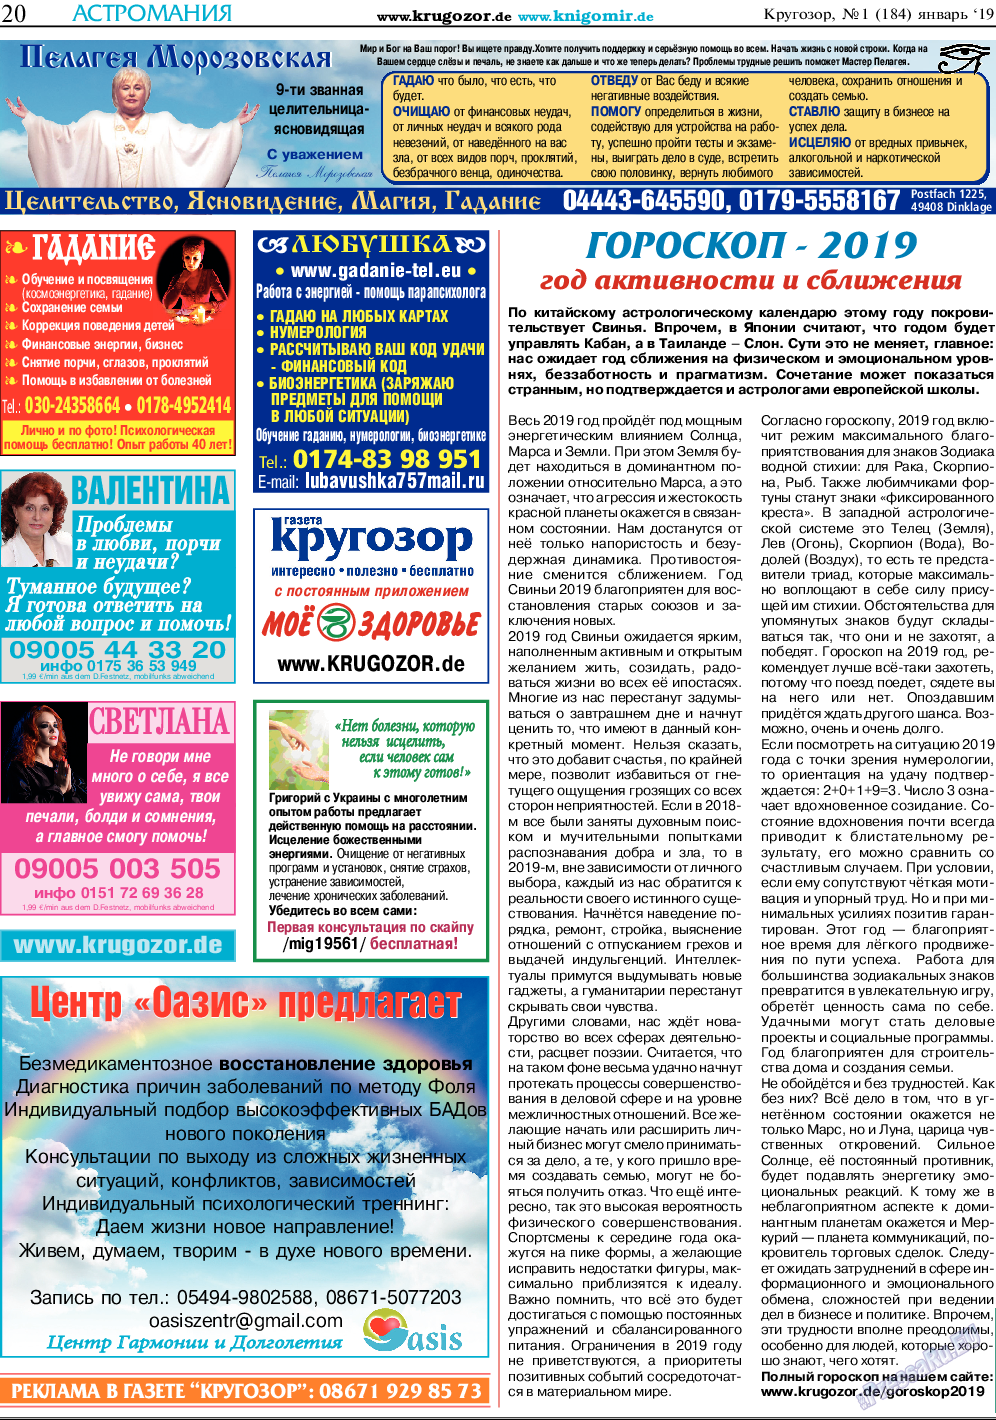 Кругозор, газета. 2019 №1 стр.20